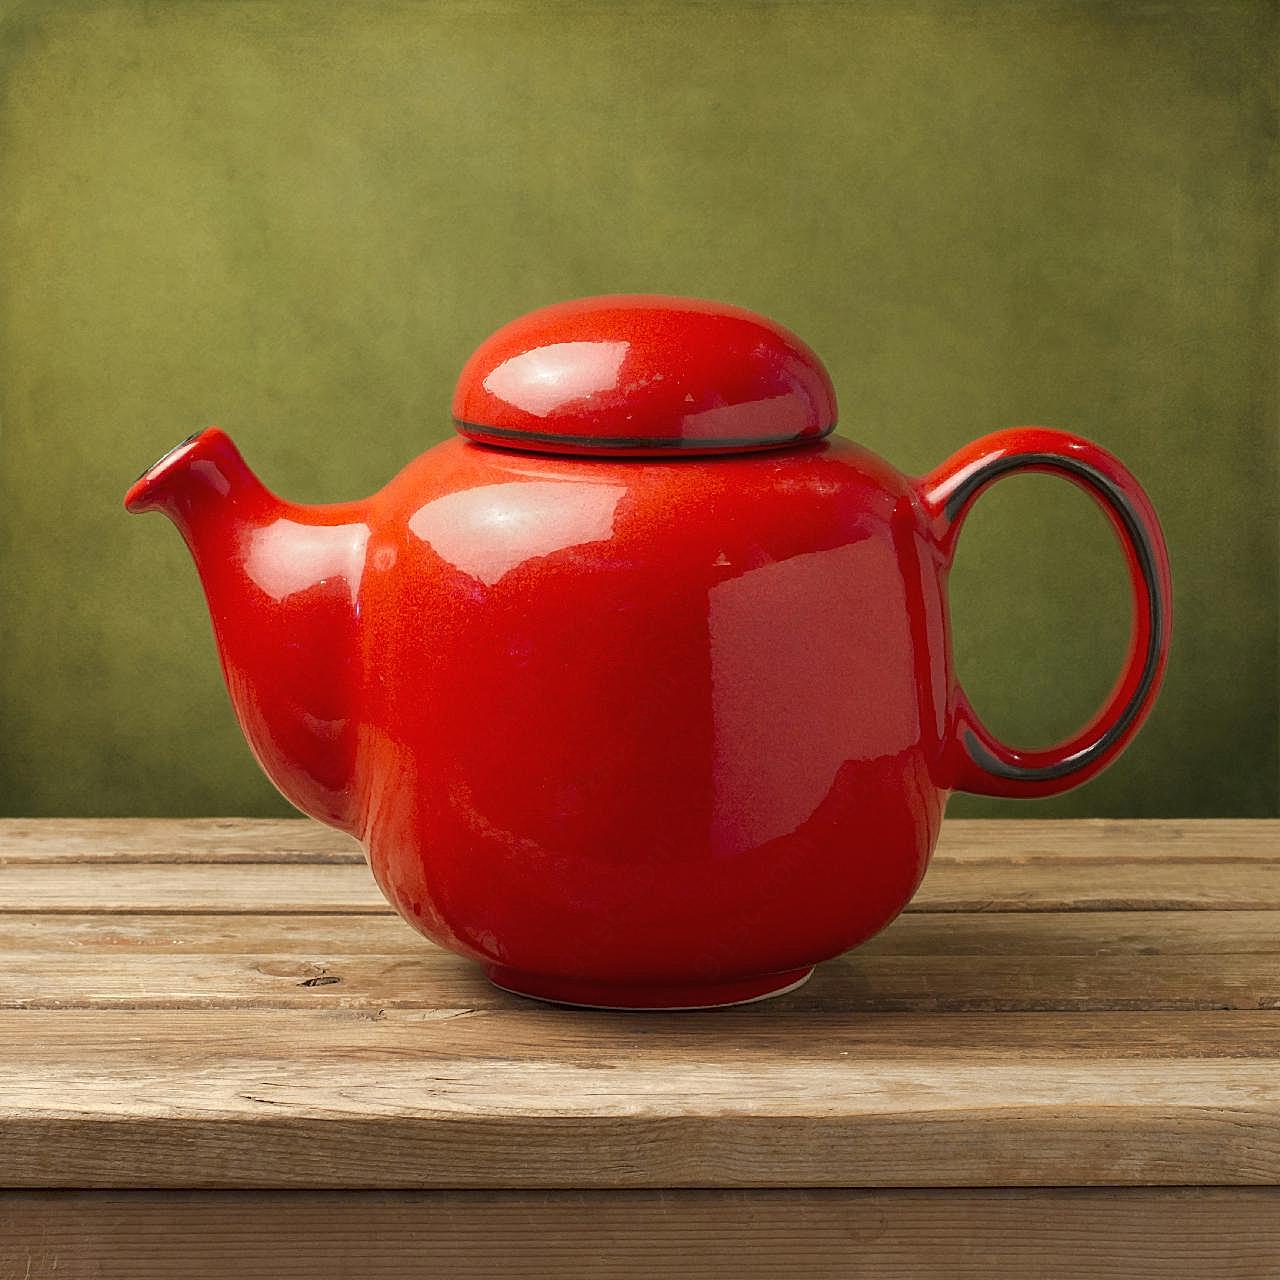 瓷器茶壶图片生活生活用品